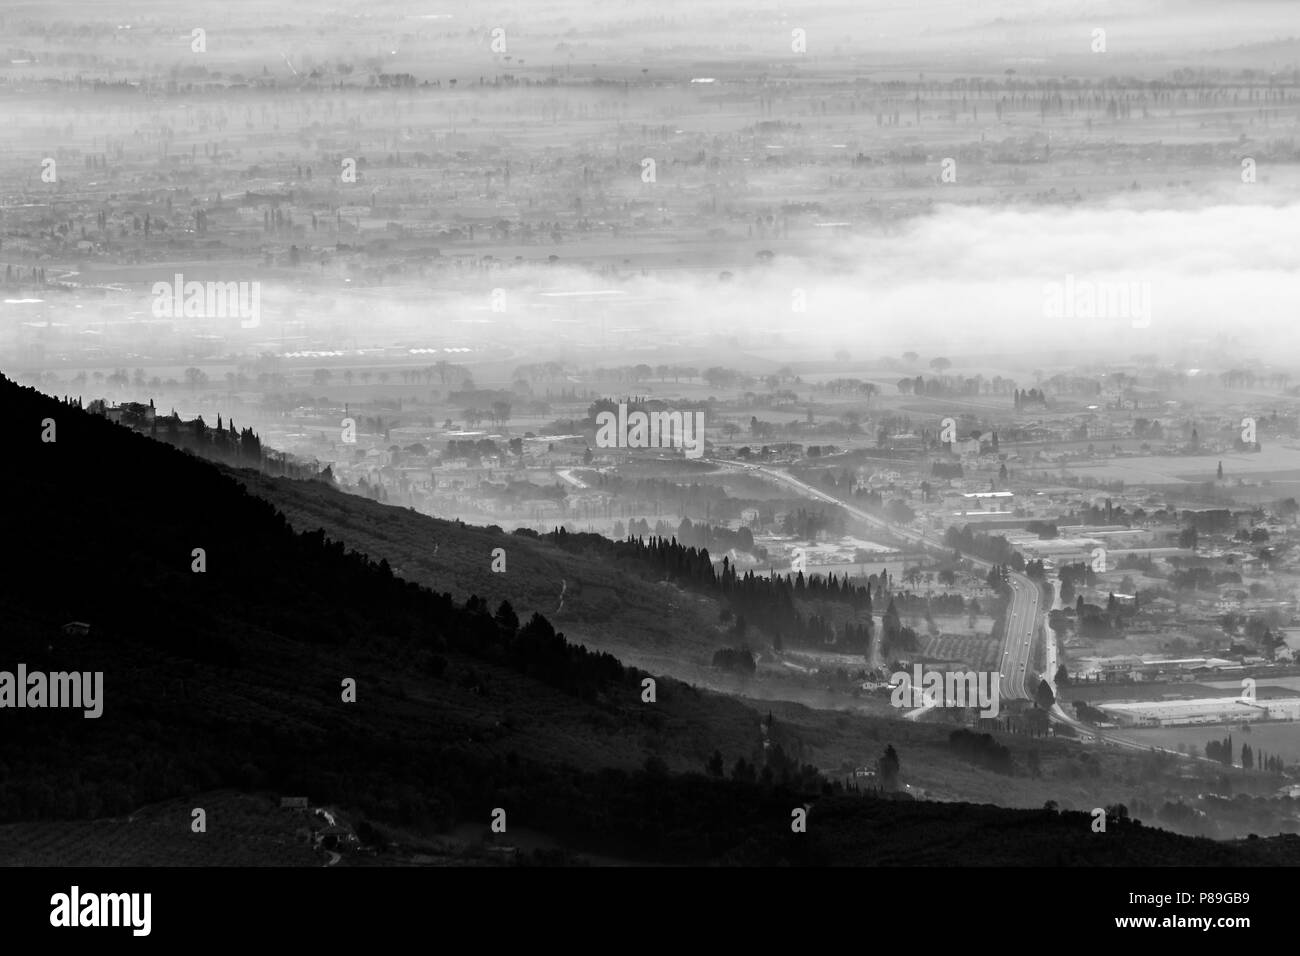 Belle vue aérienne de la vallée de l'Ombrie dans un matin d'hiver, avec du brouillard couvrant les arbres, maisons et rues Banque D'Images